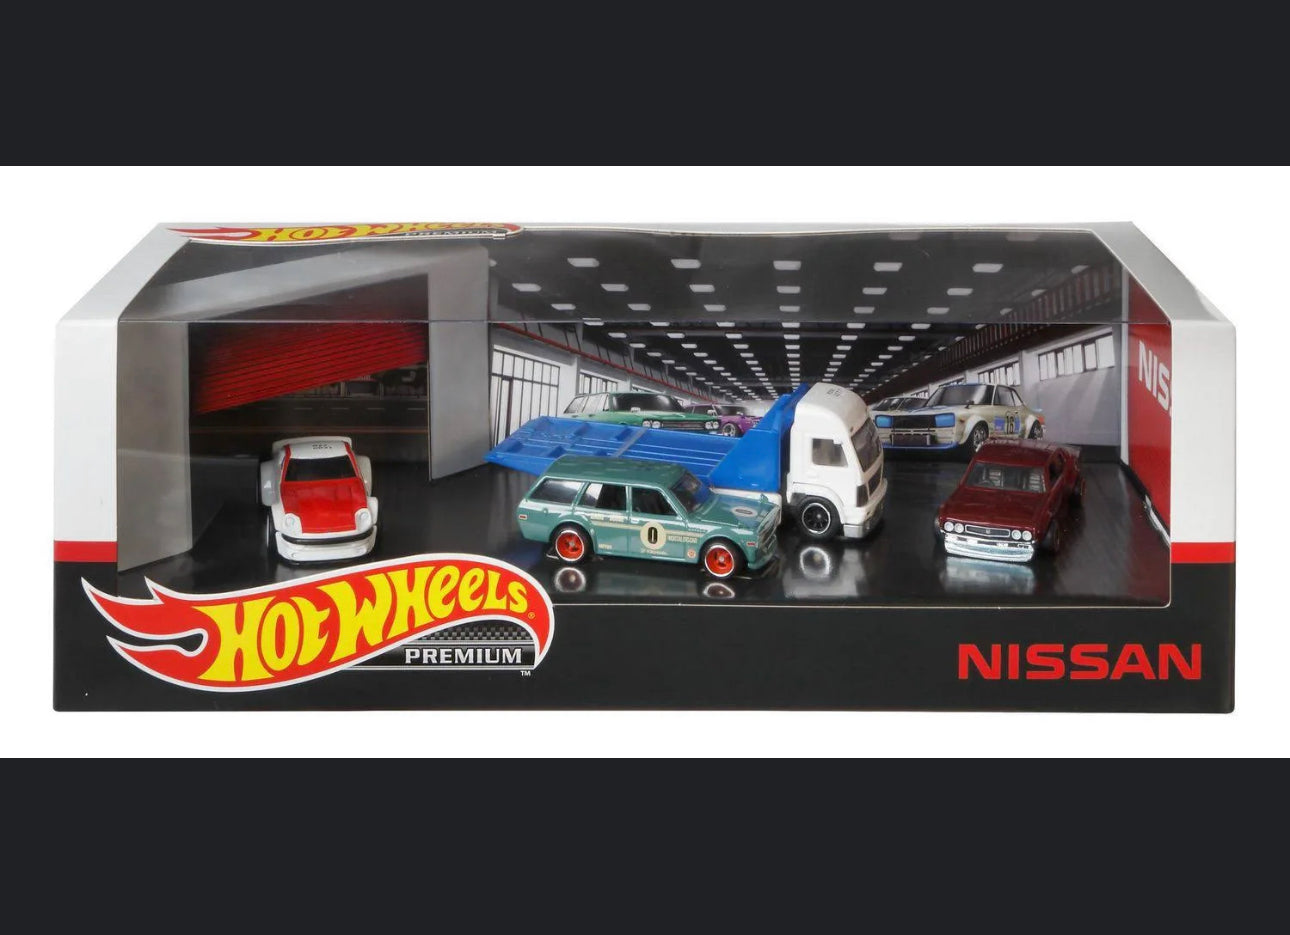 Hot Wheels Premium Nissan Garage Collector Set